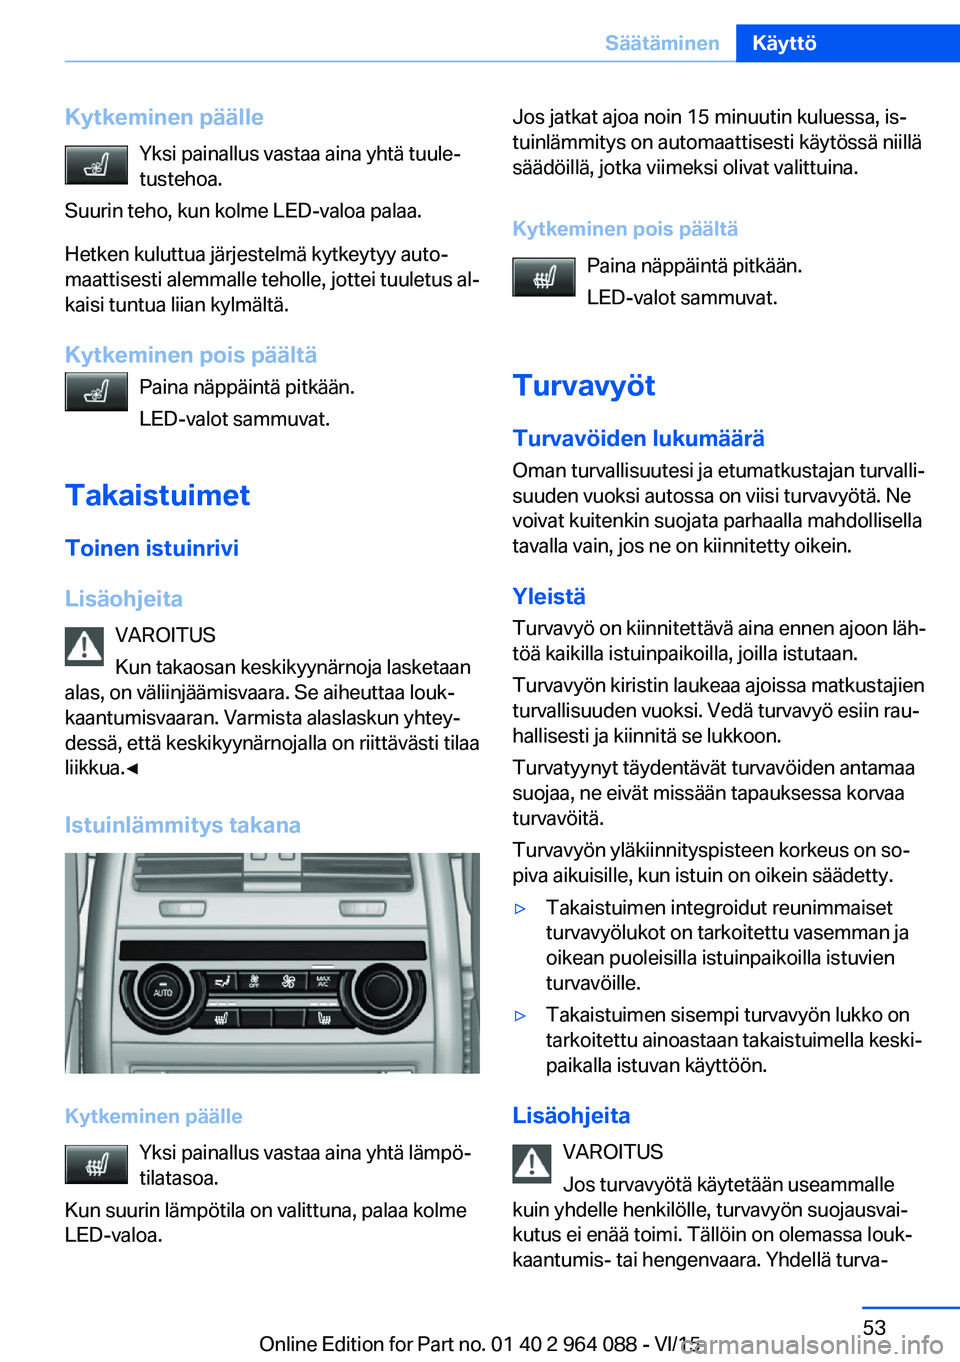 BMW X5 M 2016  Omistajan Käsikirja (in Finnish) Kytkeminen päälleYksi painallus vastaa aina yhtä tuule‐
tustehoa.
Suurin teho, kun kolme LED-valoa palaa.
Hetken kuluttua järjestelmä kytkeytyy auto‐
maattisesti alemmalle teholle, jottei tuu